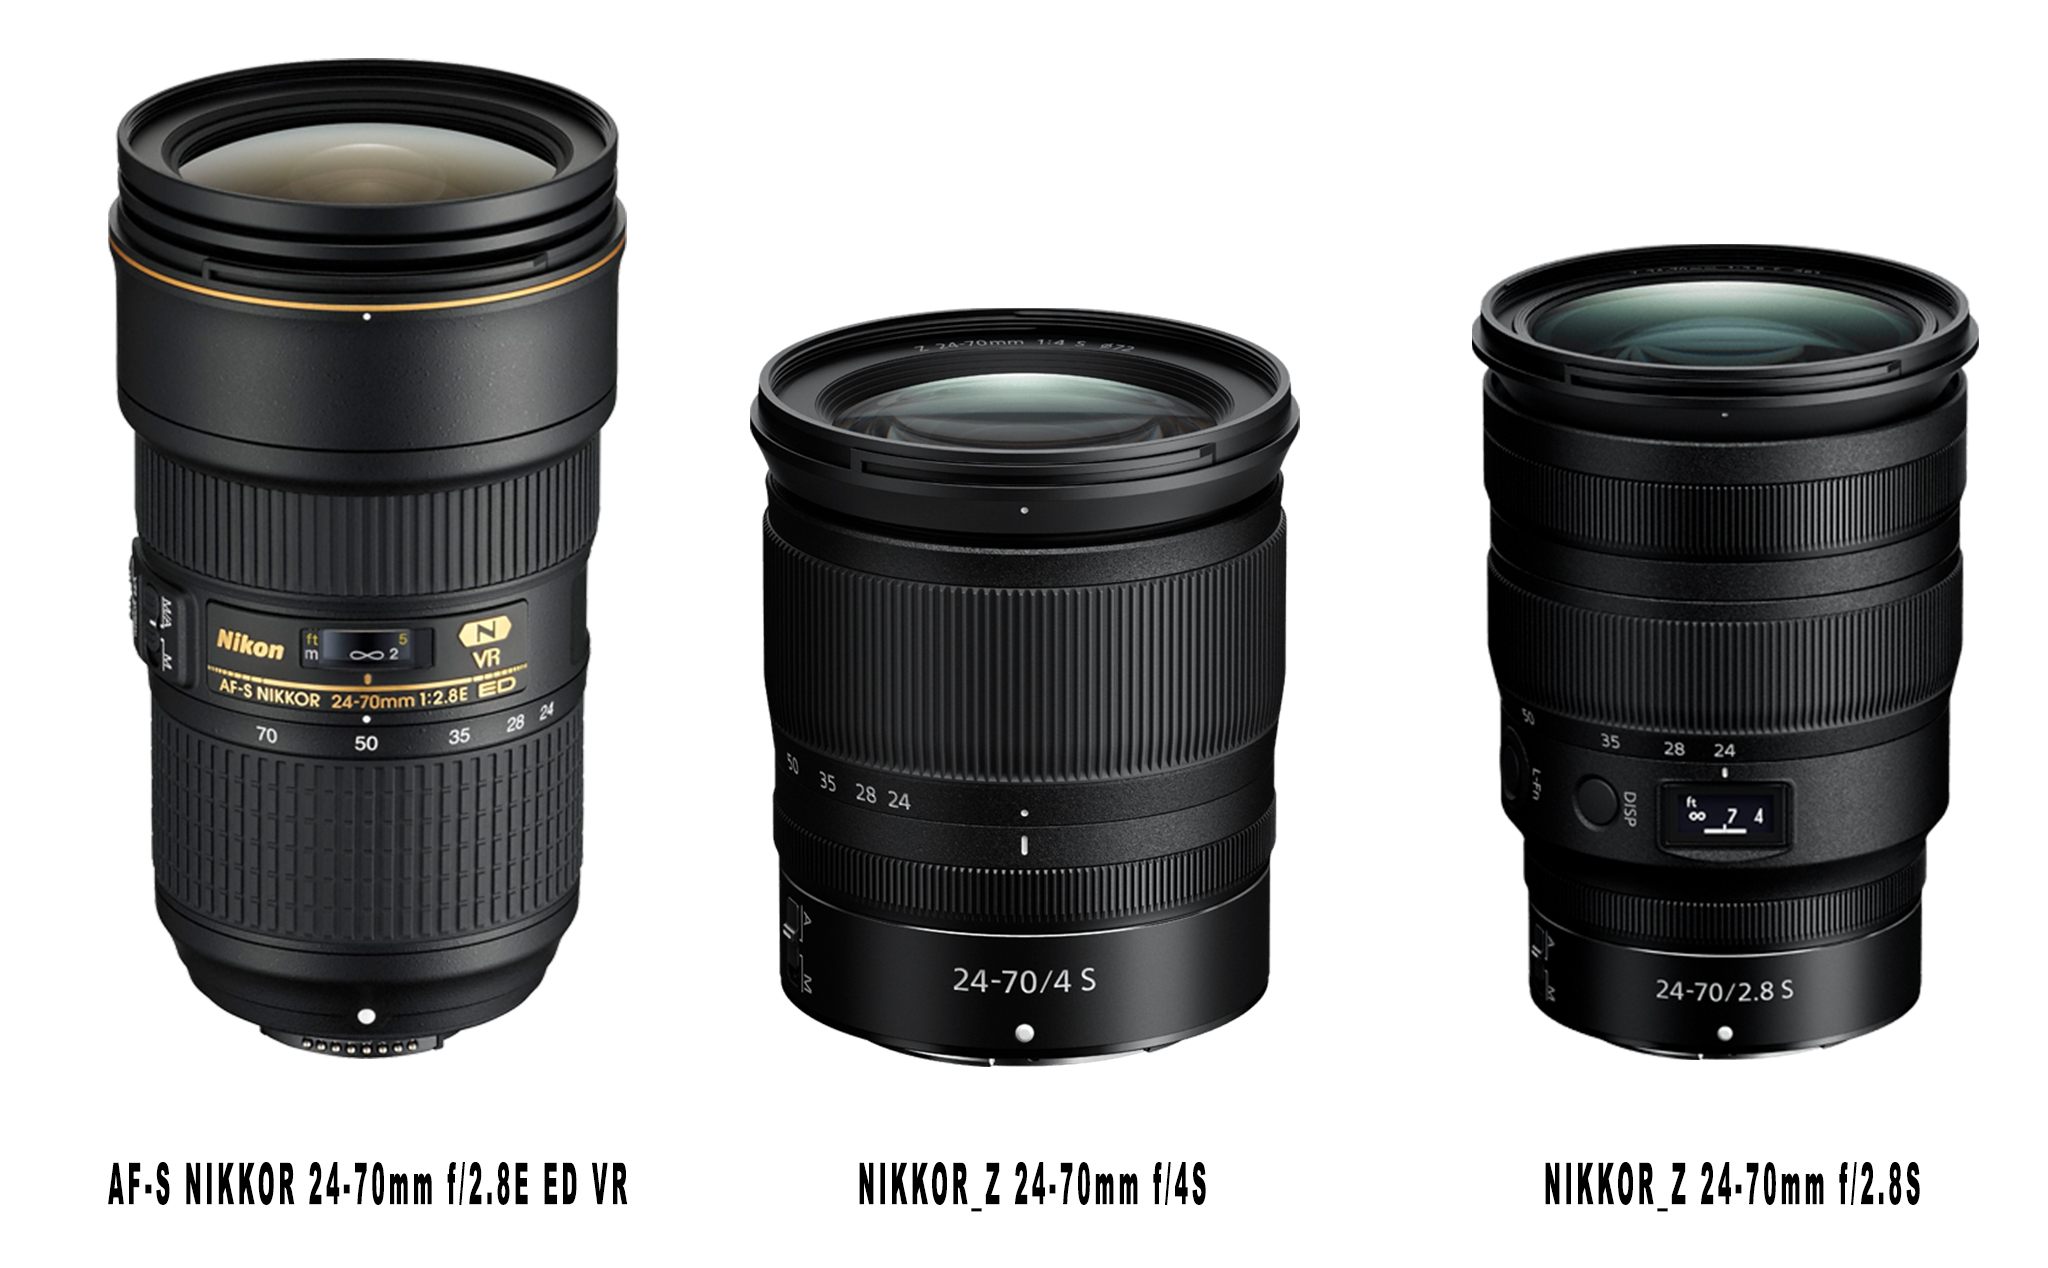 So sánh thông số 3 ống kính mới nhất có cùng tiêu cự 24-70mm của Nikon